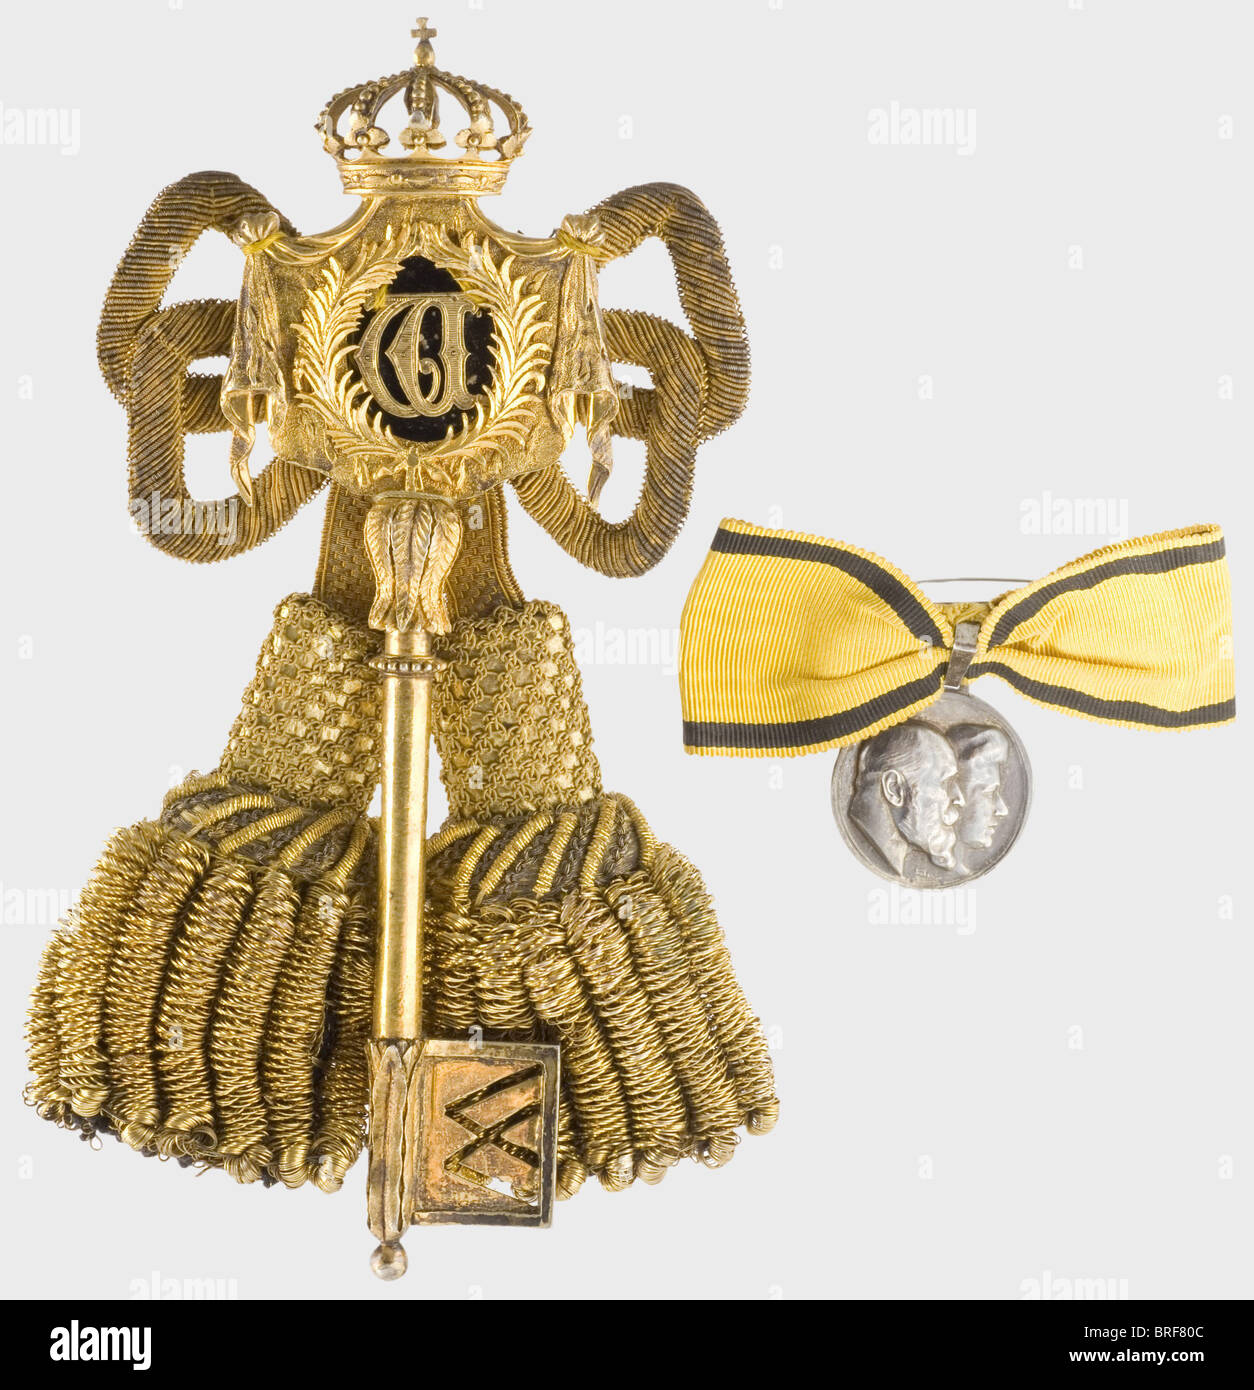 Chiave di un ciambellano, dal Regno di Re Guglielmo II (1891 - 1918). Argento dorato. Cordone di lingotto d'oro, ricamo in lamina d'oro con una piastra cucita sul retro con il perno di fissaggio. Lunghezza 17 cm. Sul nastro della donna è inoltre presente una medaglia d'argento 1911 (OEK 3017). Storico, storico, 1910s, 20th secolo, medaglia, decorazione, medaglie, decorazioni, badge d'onore, distintivo d'onore, distintivi d'onore, distintivi d'onore, oggetto, oggetti, alambicchi, clippings, tagli, tagli, tagli, Foto Stock